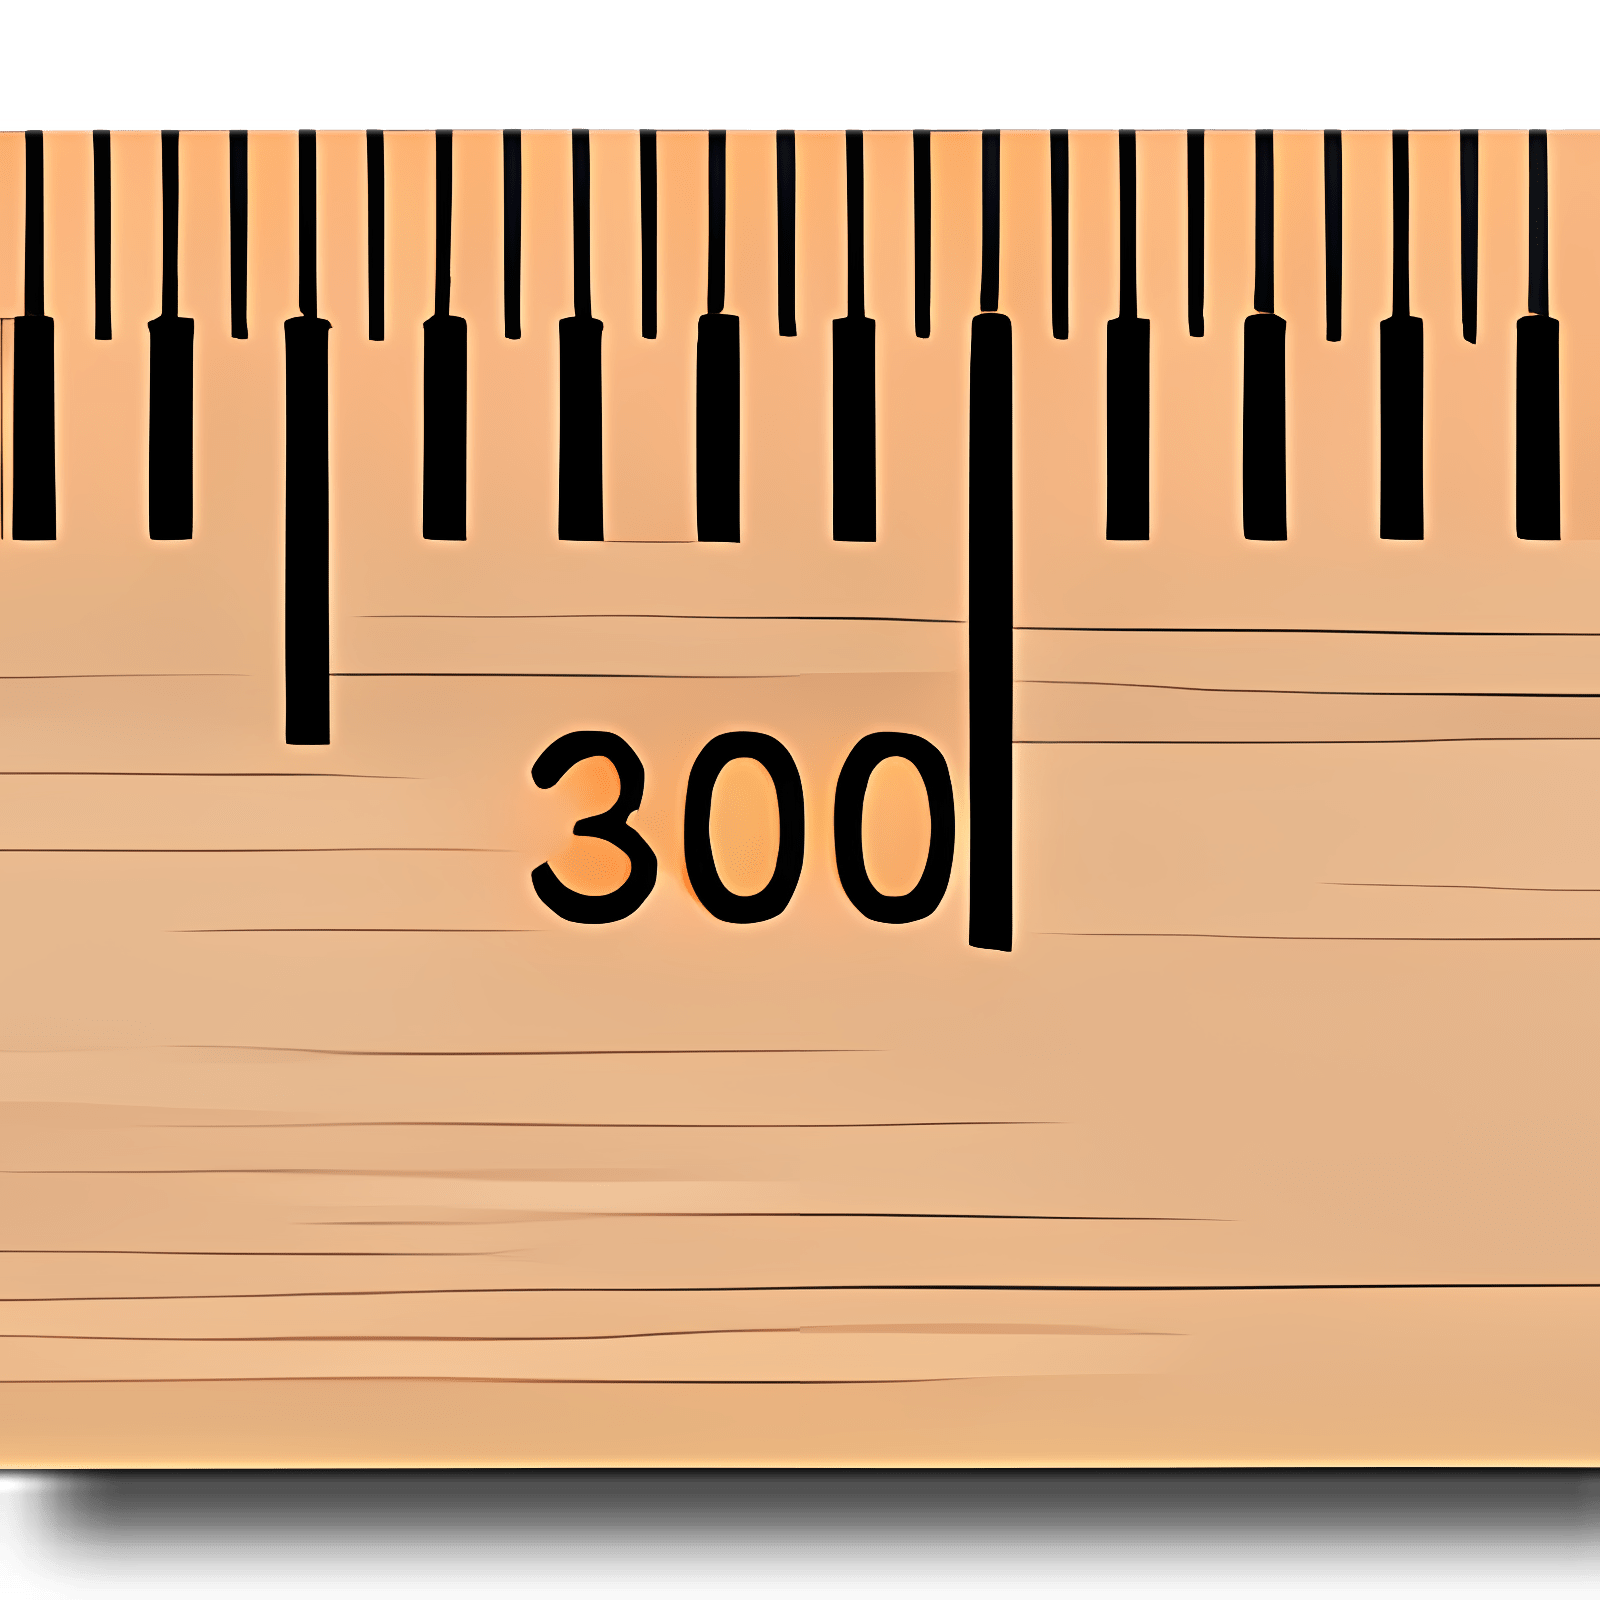 ruler image download